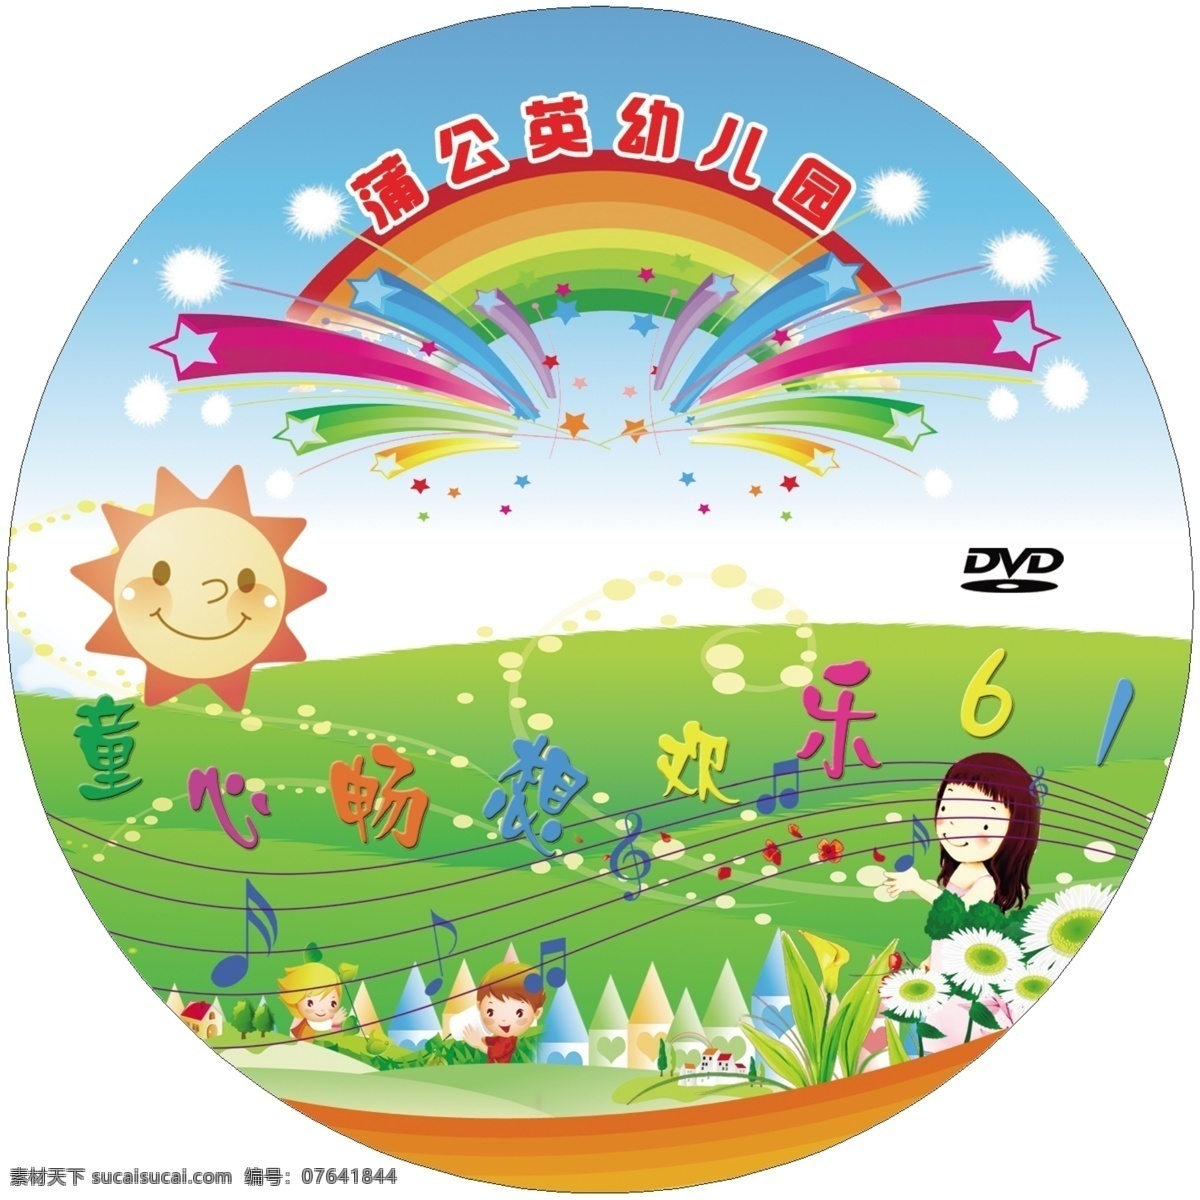 童心 童心素材下载 童心模板下载 光盘 光盘面 幼儿园 dvd 六一 六一儿童节 源文件